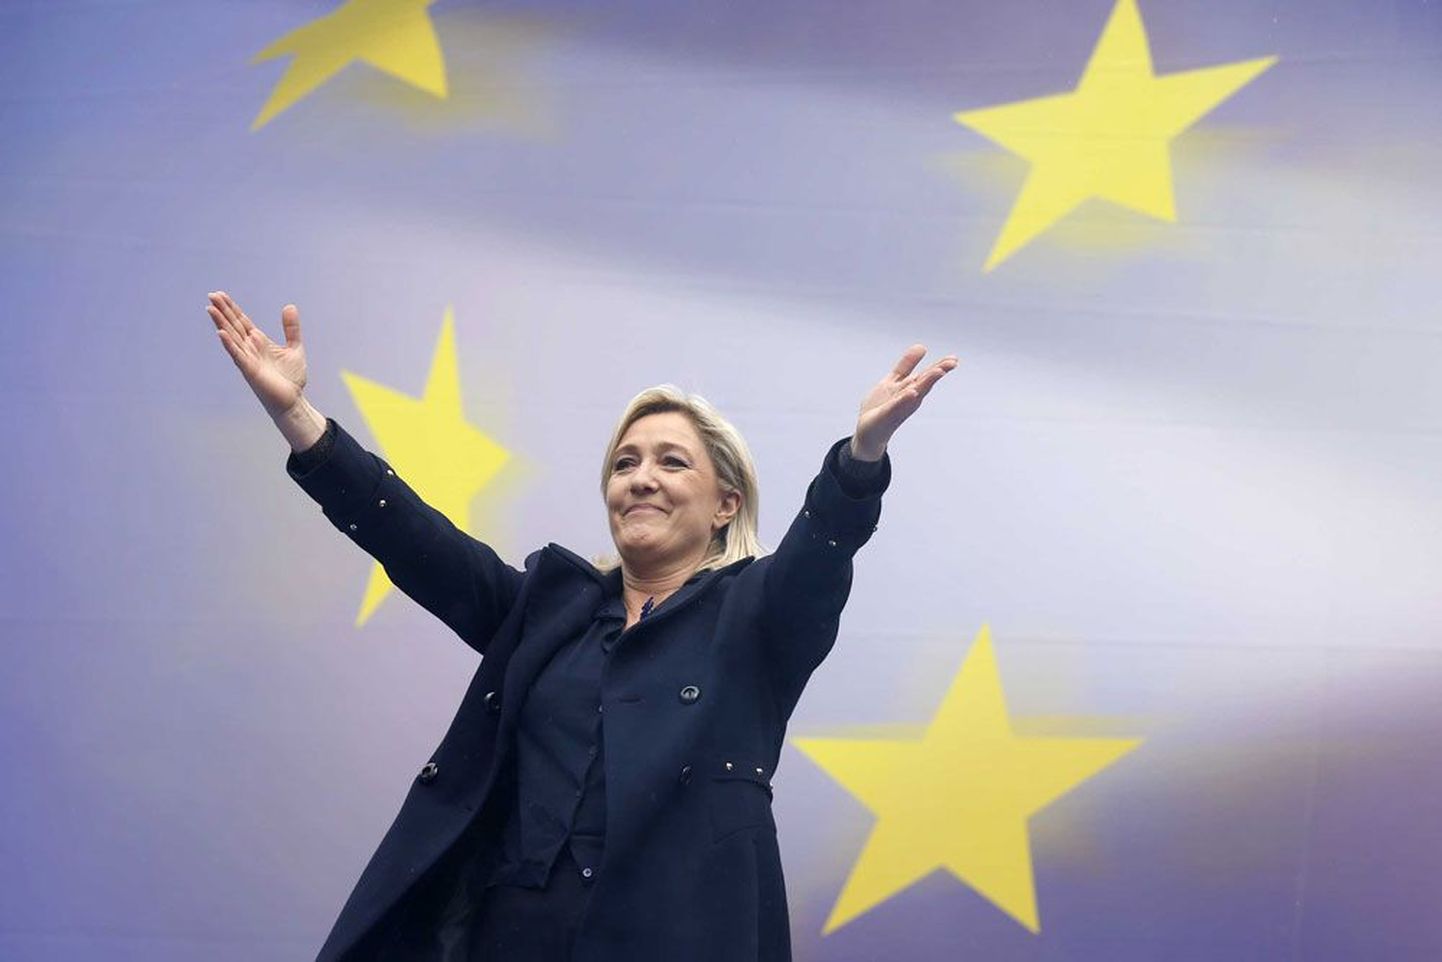 Marine Le Pen ja tema juhitav Prantsuse Rahvusrinne on näide         paremäärmuslikust ja Vene-lembesest erakonnast, kelle esindatus järgmises europarlamendis uuringute kohaselt tuntavalt kasvab.